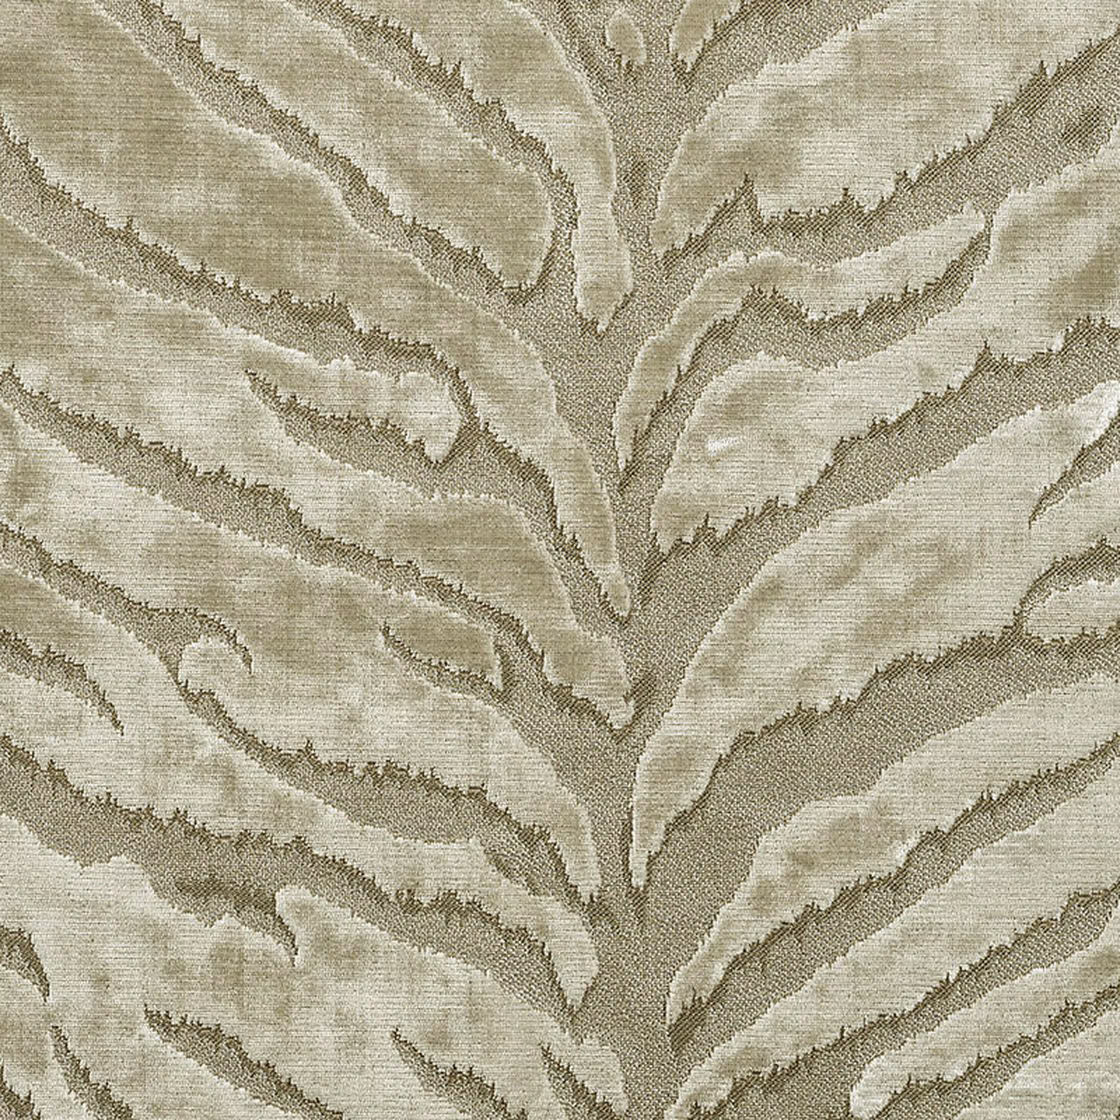 Bengal Fabric - Catherine Martin by Mokum